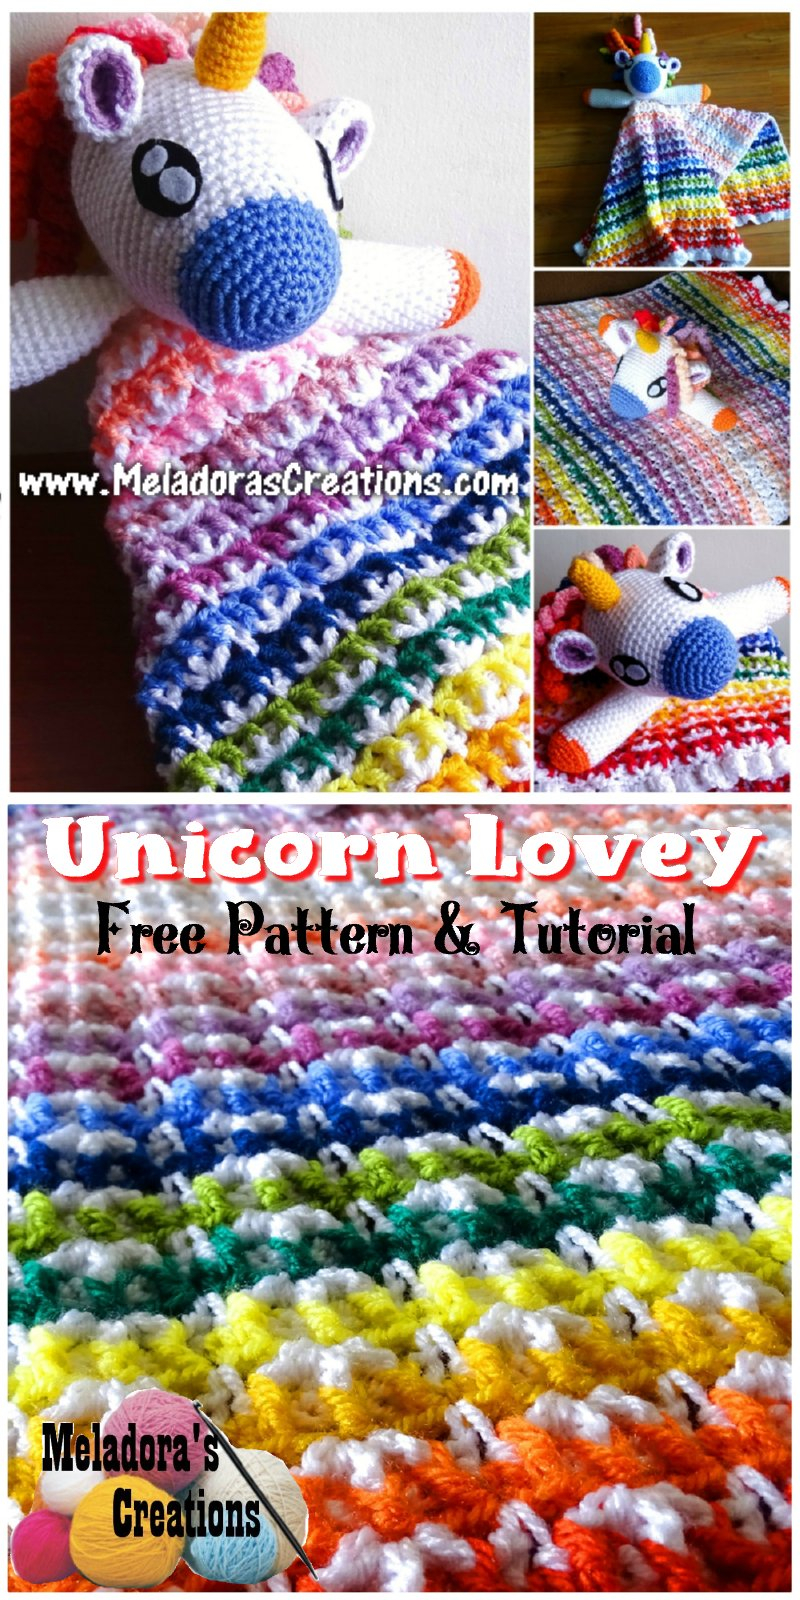 Free Crochet Lovey Pattern Crochet Unicorn Lovey Cal Part 1 Free Crochet Pattern